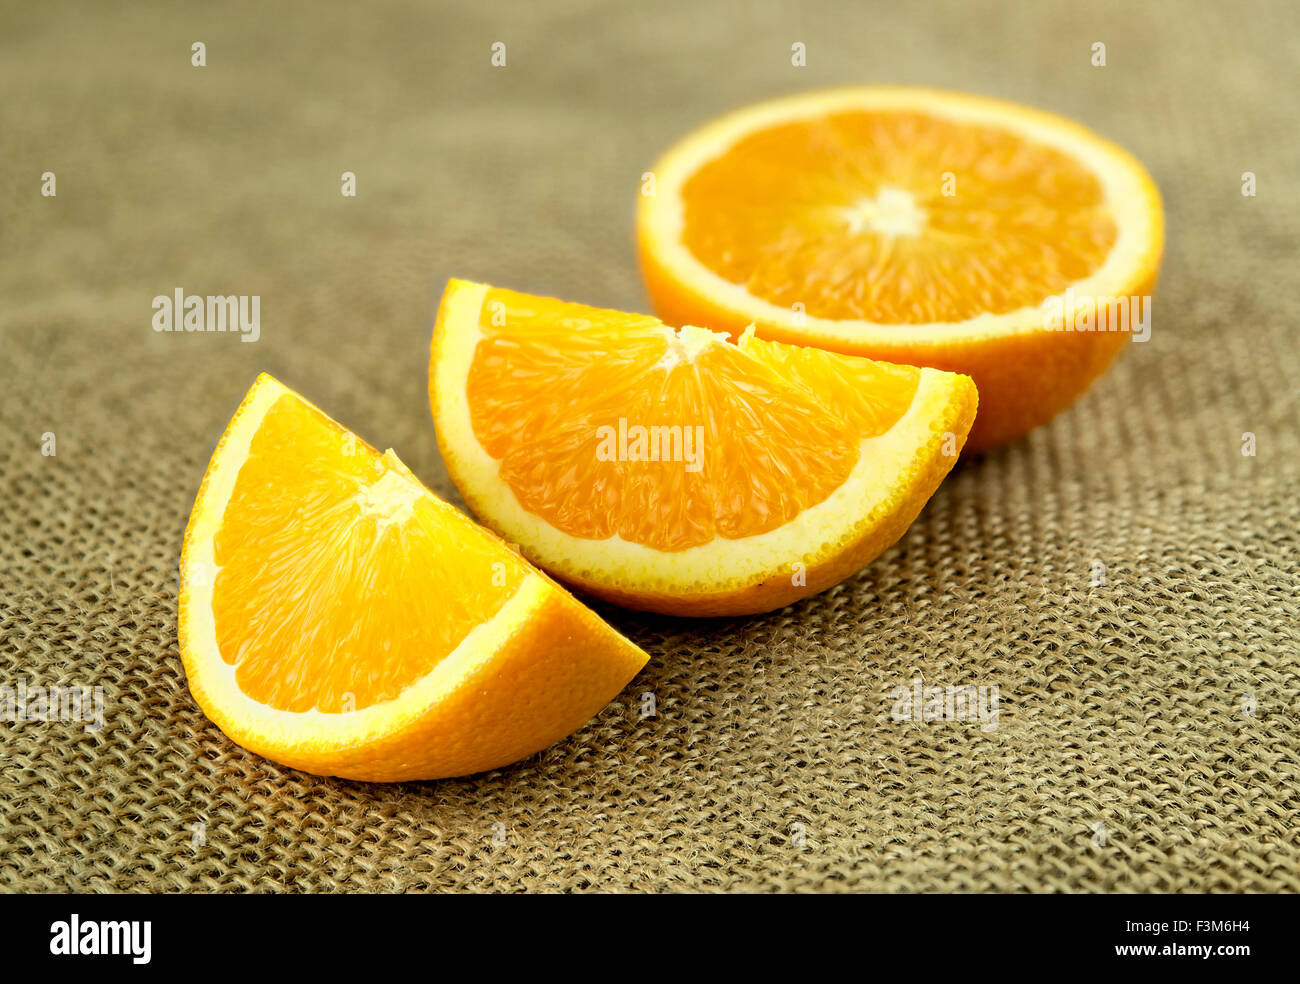 Secciones transversales de jugosas naranjas frescas orgánicas Foto de stock